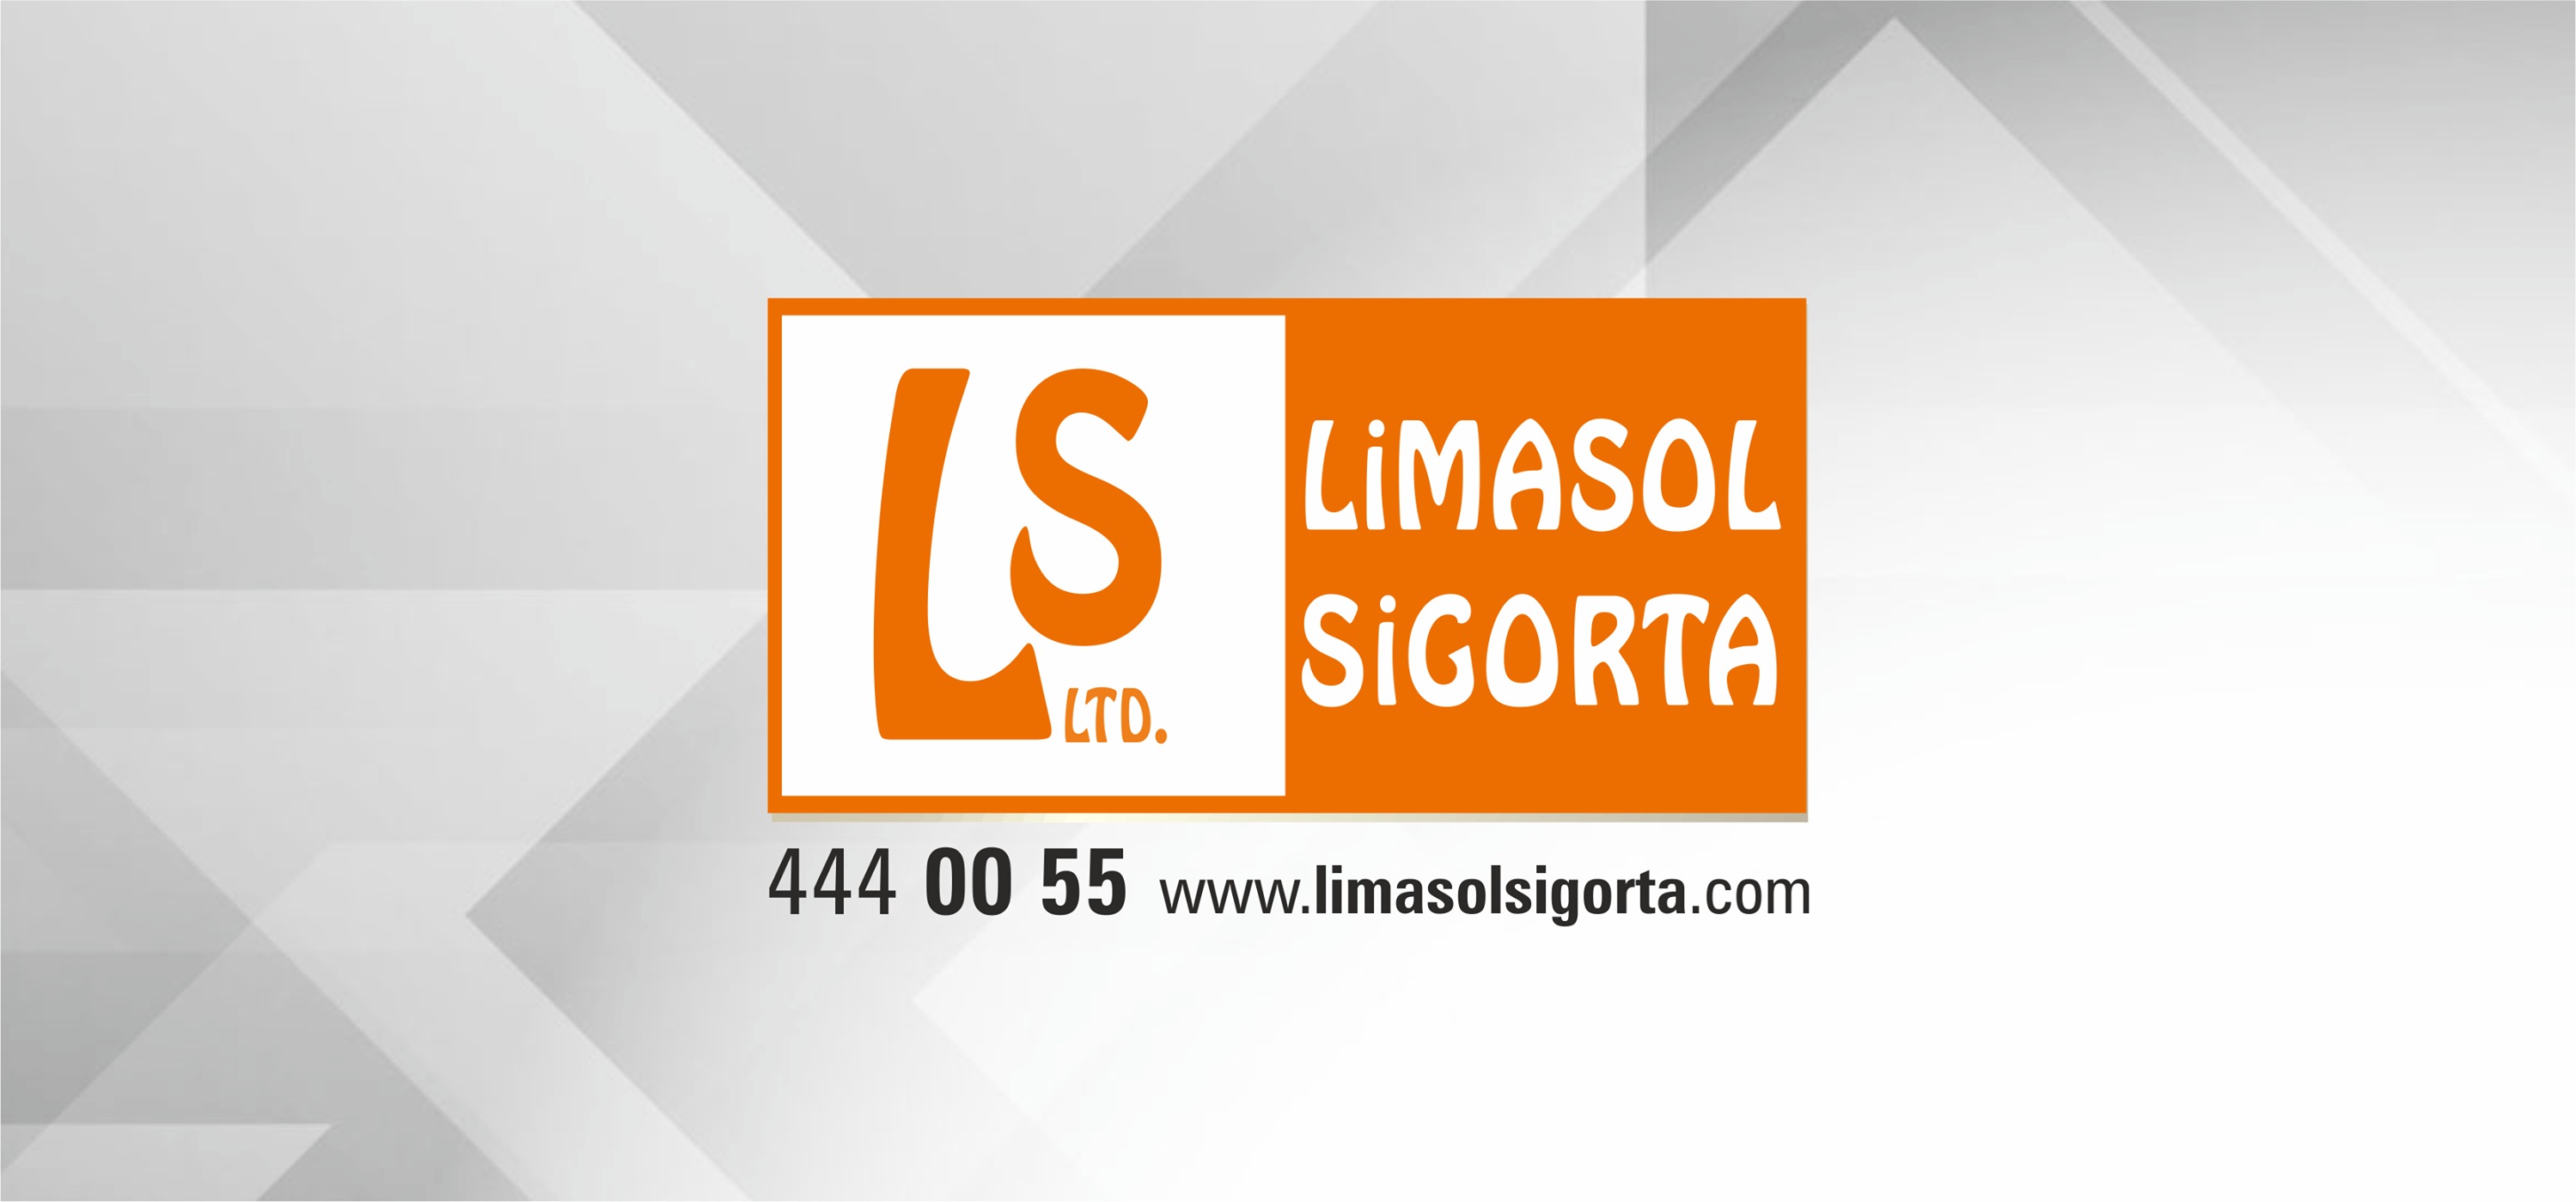 Limasol Sigorta